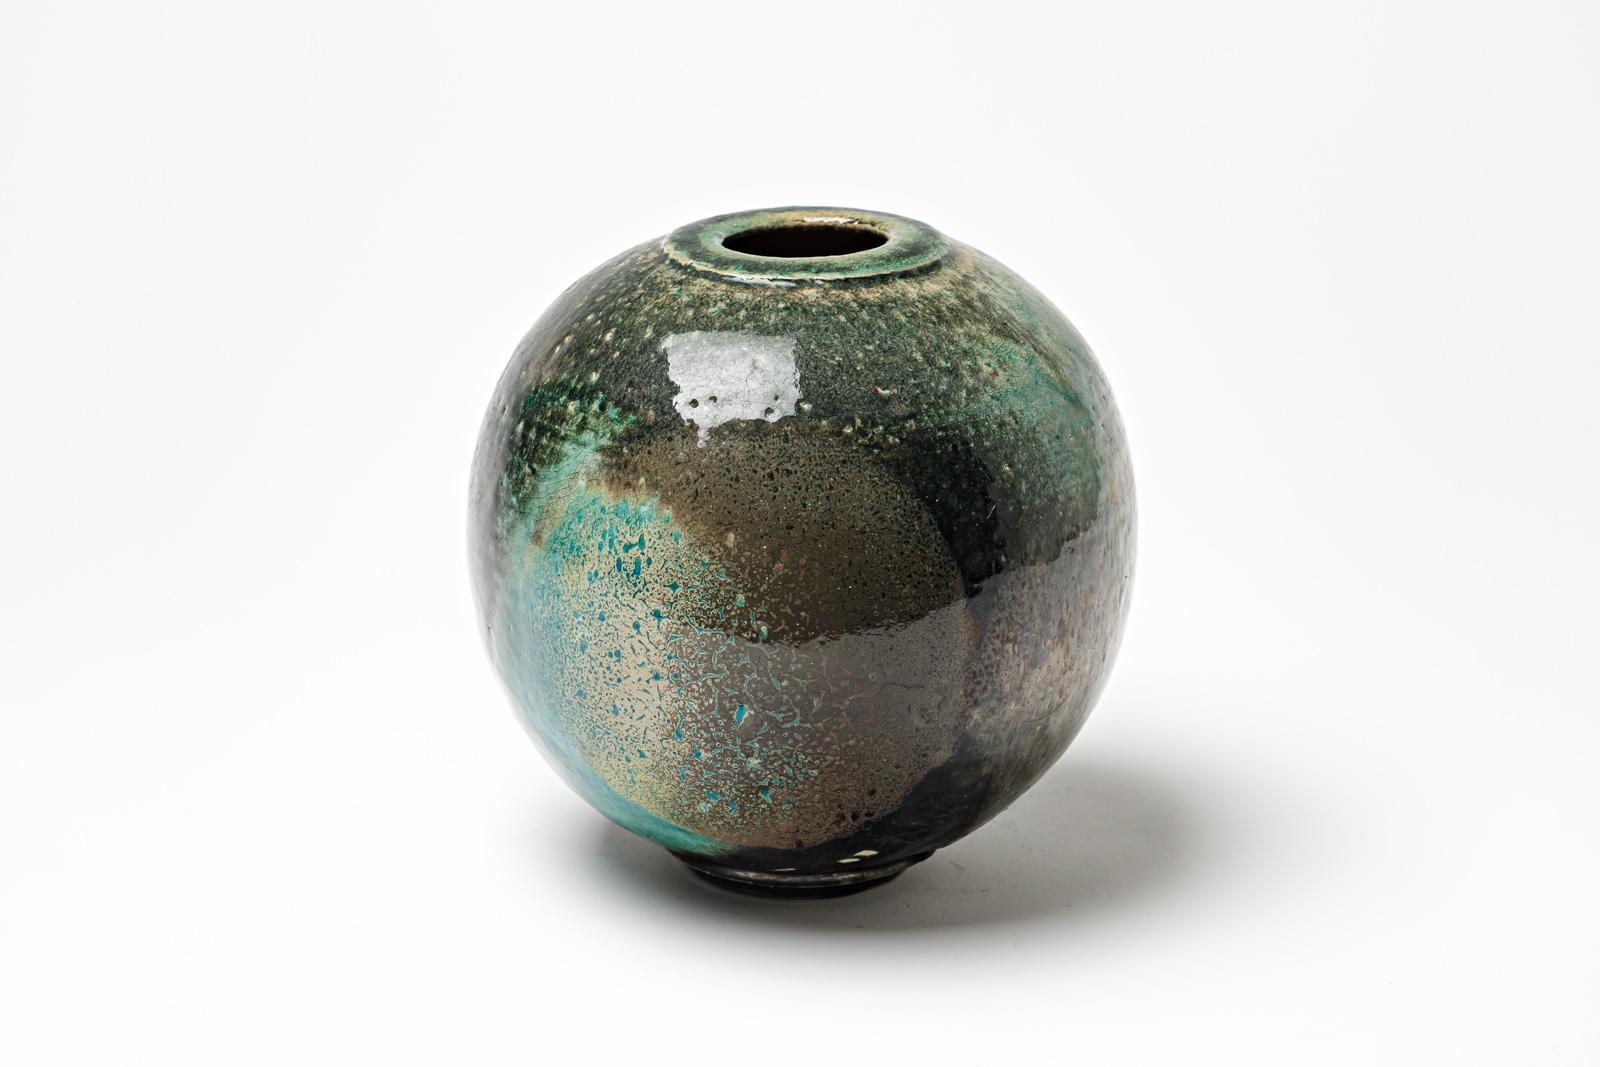 Vase en céramique émaillée bleu/vert et noir de Gisèle Buthod Garçon. 
Raku a tiré. Monogramme de l'artiste sous la base. Vers 1980-1990.
H : 7.5' x 6.3' pouces.